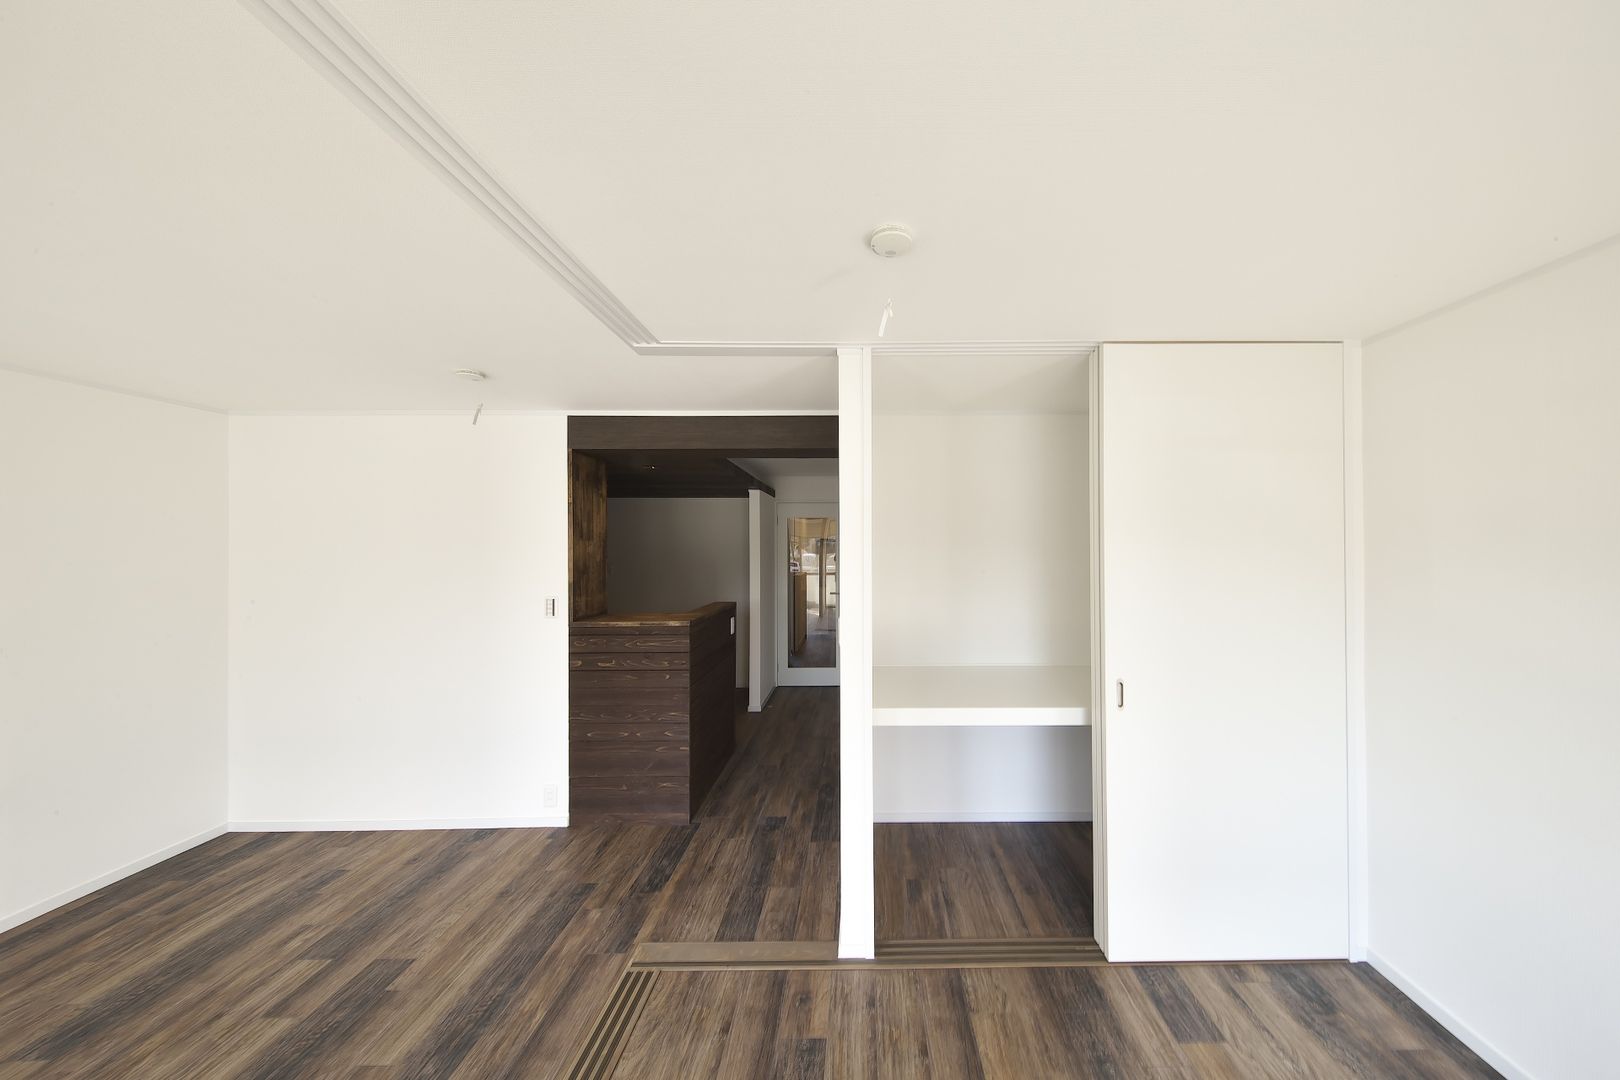 Rental apartment | renovation, FRCHIS,WORKS FRCHIS,WORKS Ausgefallene Wohnzimmer Holz Holznachbildung